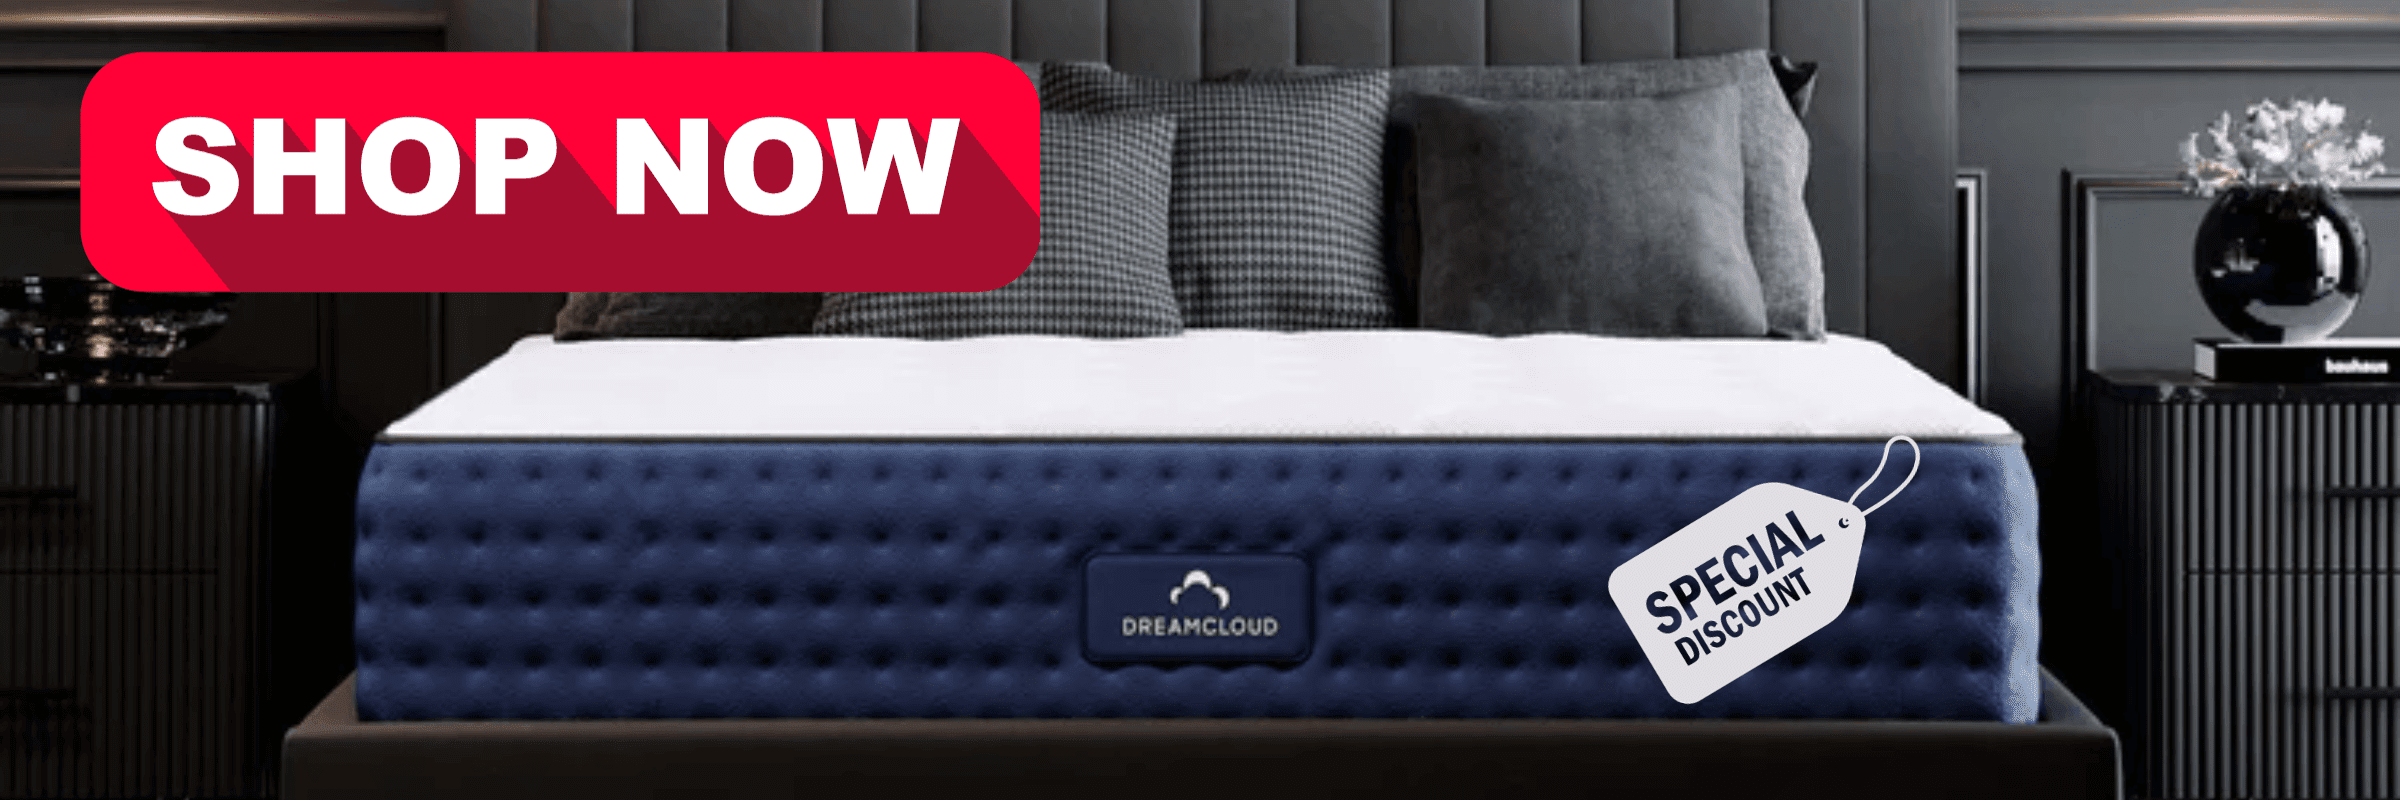 dreamcloud mattress best deal (1)